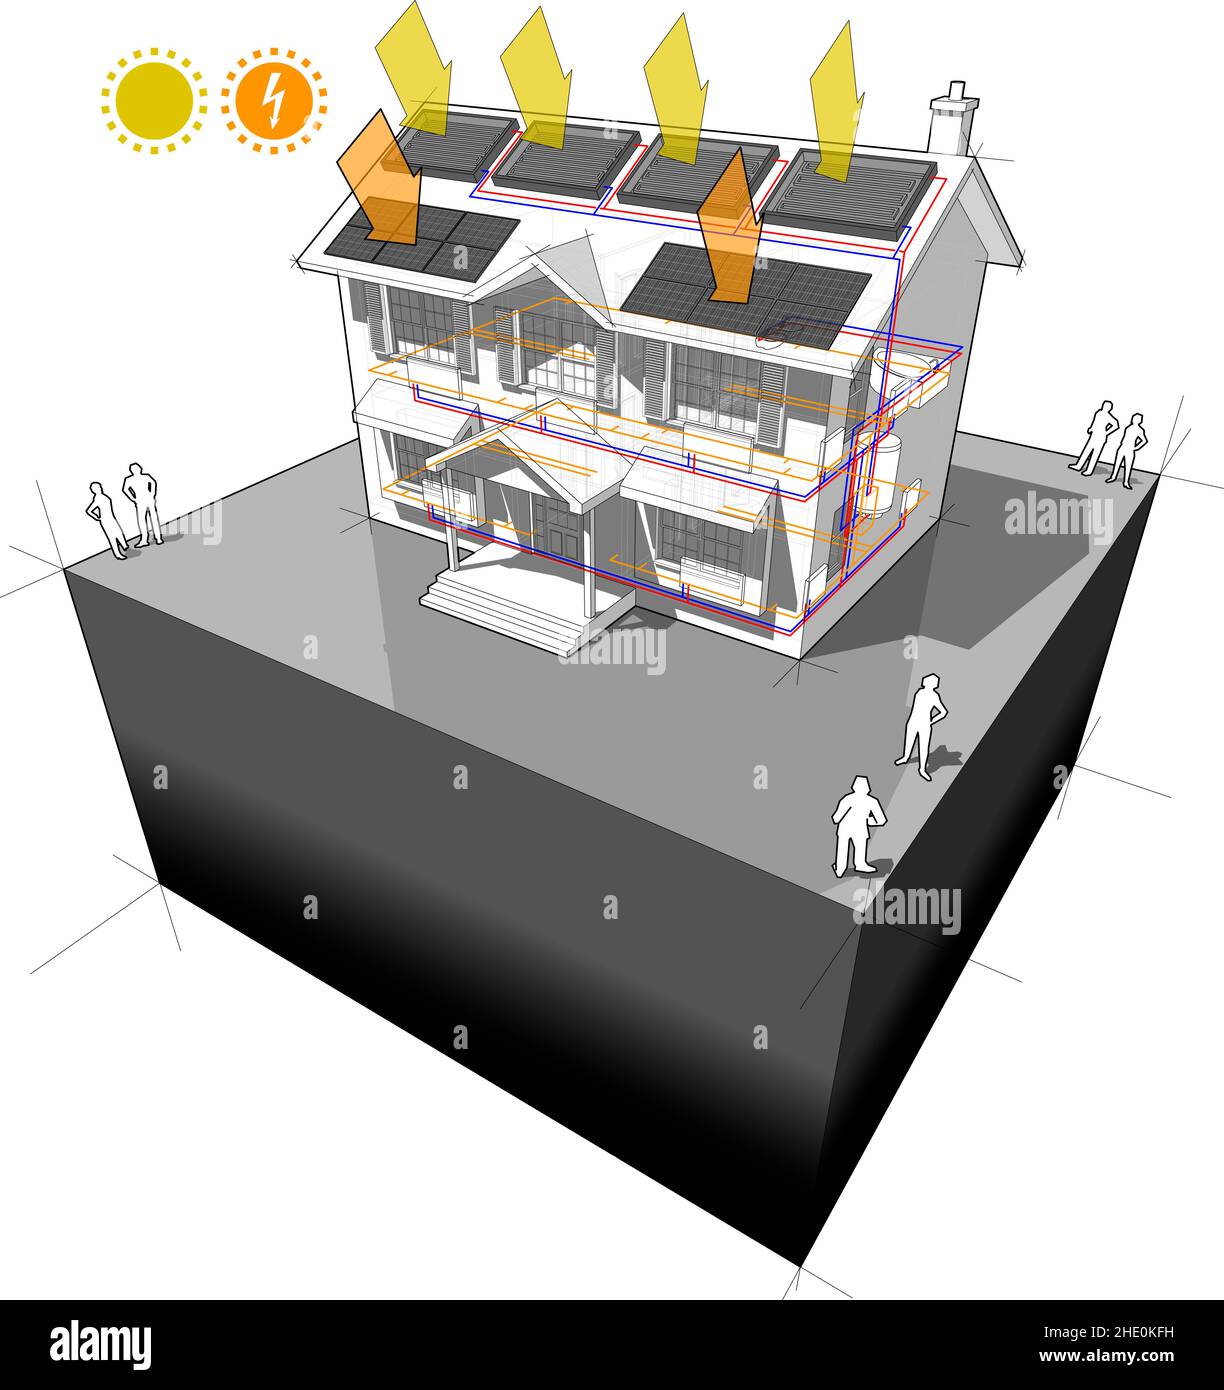 schema di una casa coloniale classica con radiatori e pannelli solari riscaldanti e pannelli fotovoltaici sul tetto come fonte di energia elettrica Foto Stock